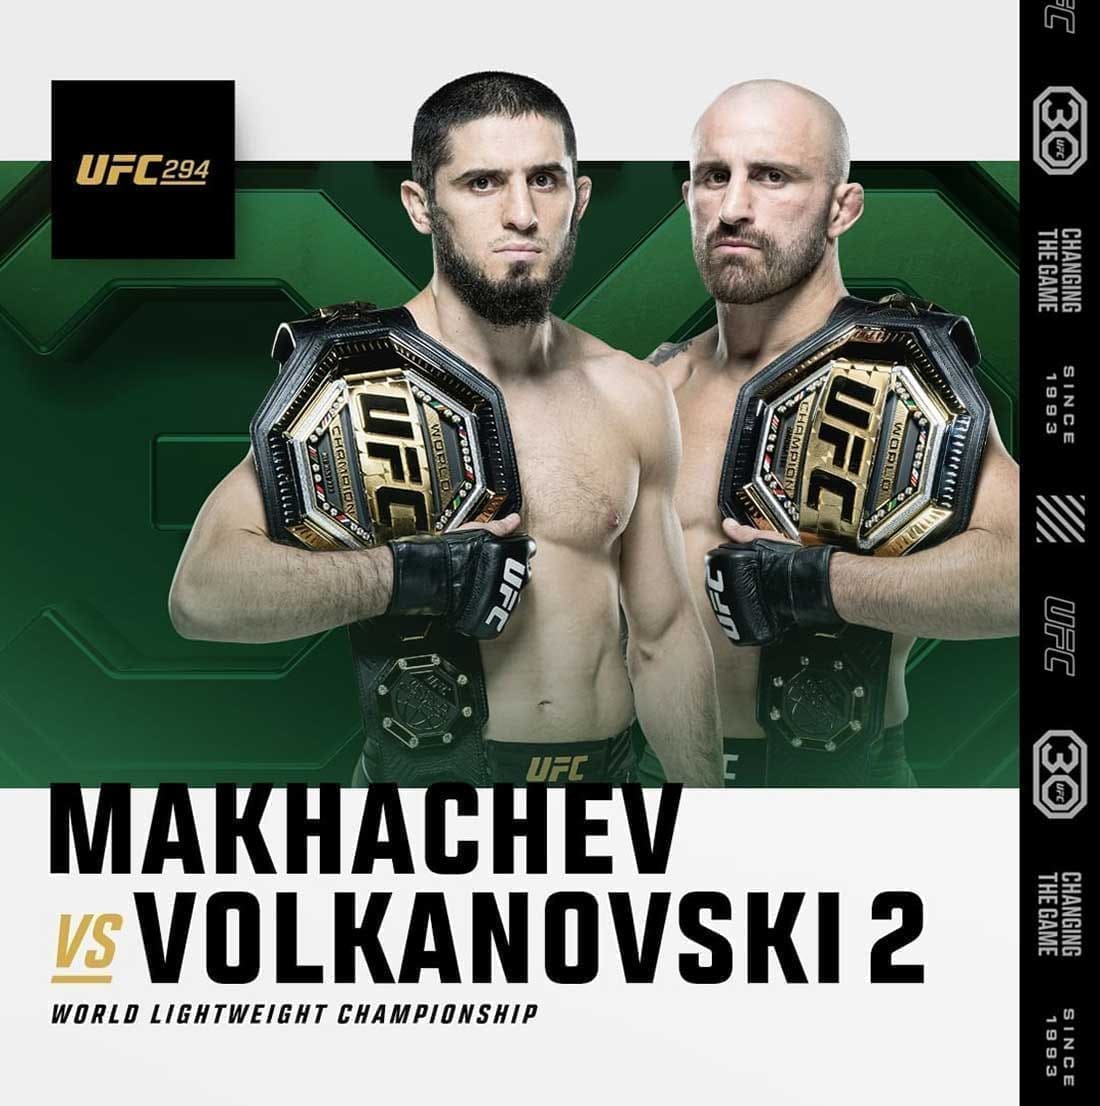 UFC 294: Махачев - Волкановски 2 дата проведения, кард, участники и результаты